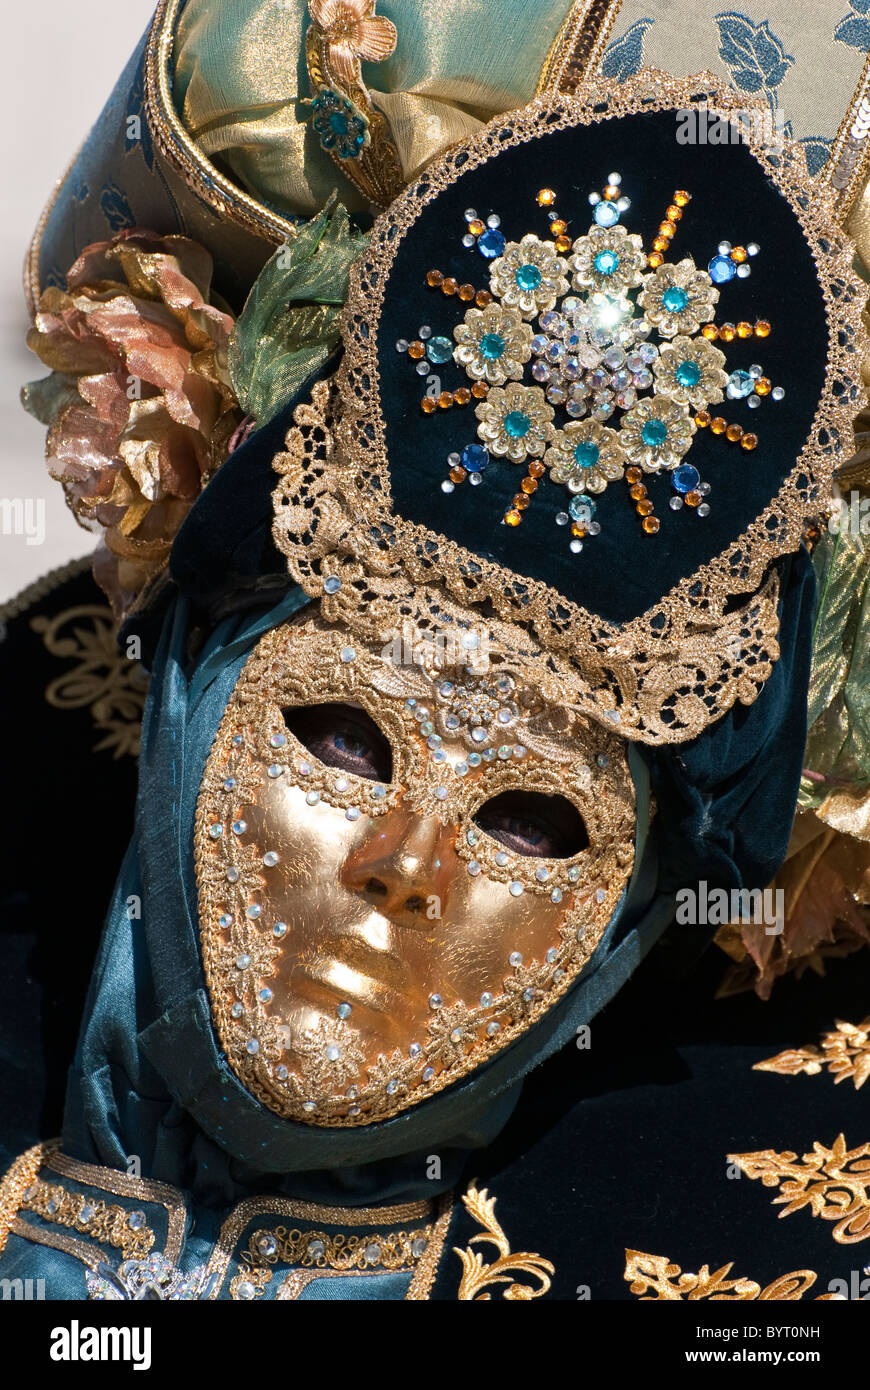 https://c8.alamy.com/compes/byt0nh/close-up-de-una-mascara-veneciana-durante-el-carnaval-en-disfraz-con-oro-negro-color-azul-claro-byt0nh.jpg